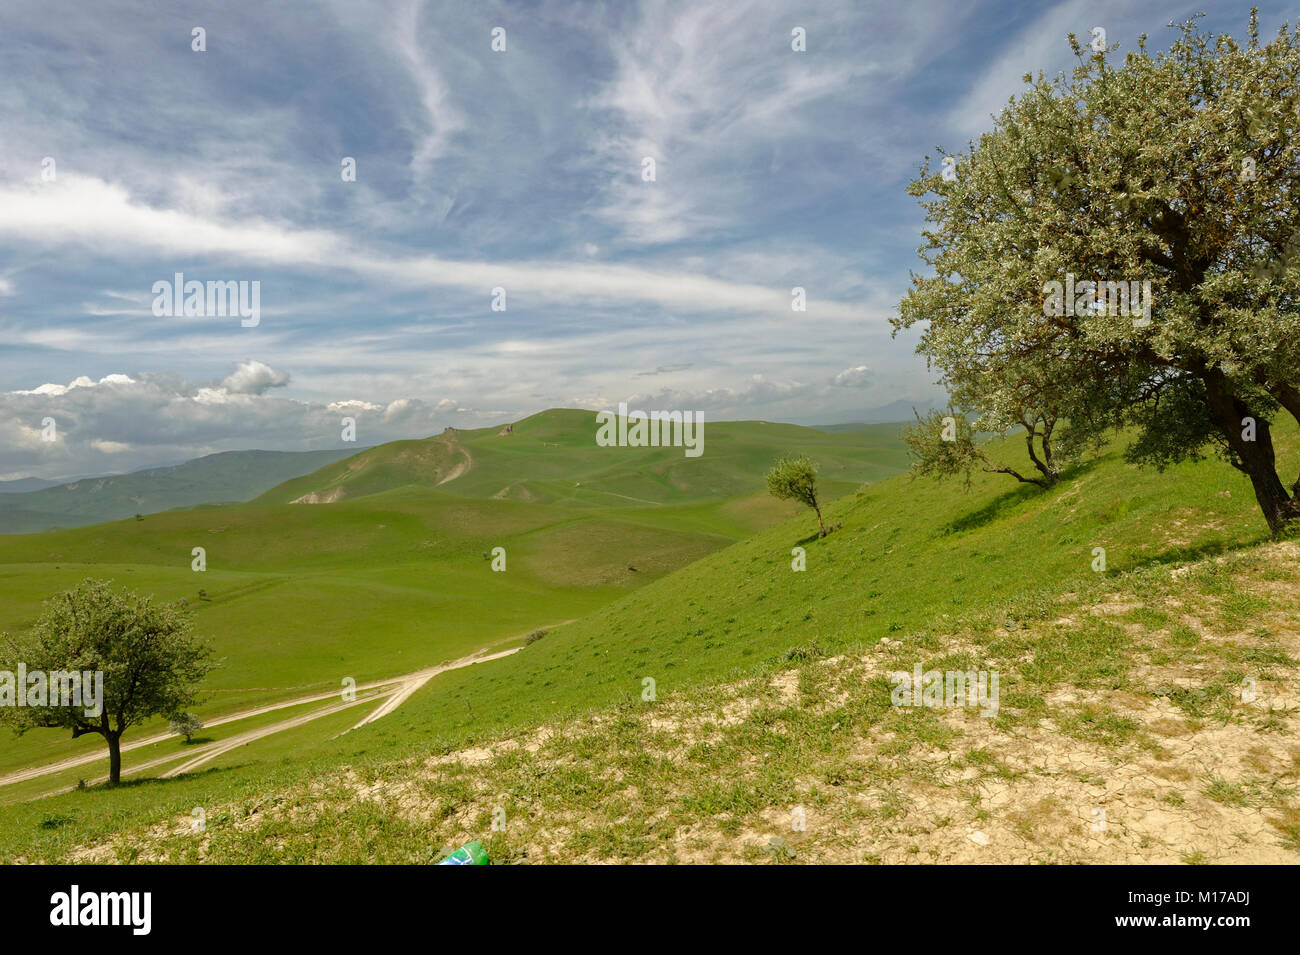 La campagne près de la Besh Barmag ou cinq doigts Mountain, près de Bakou, en Azerbaïdjan. Banque D'Images